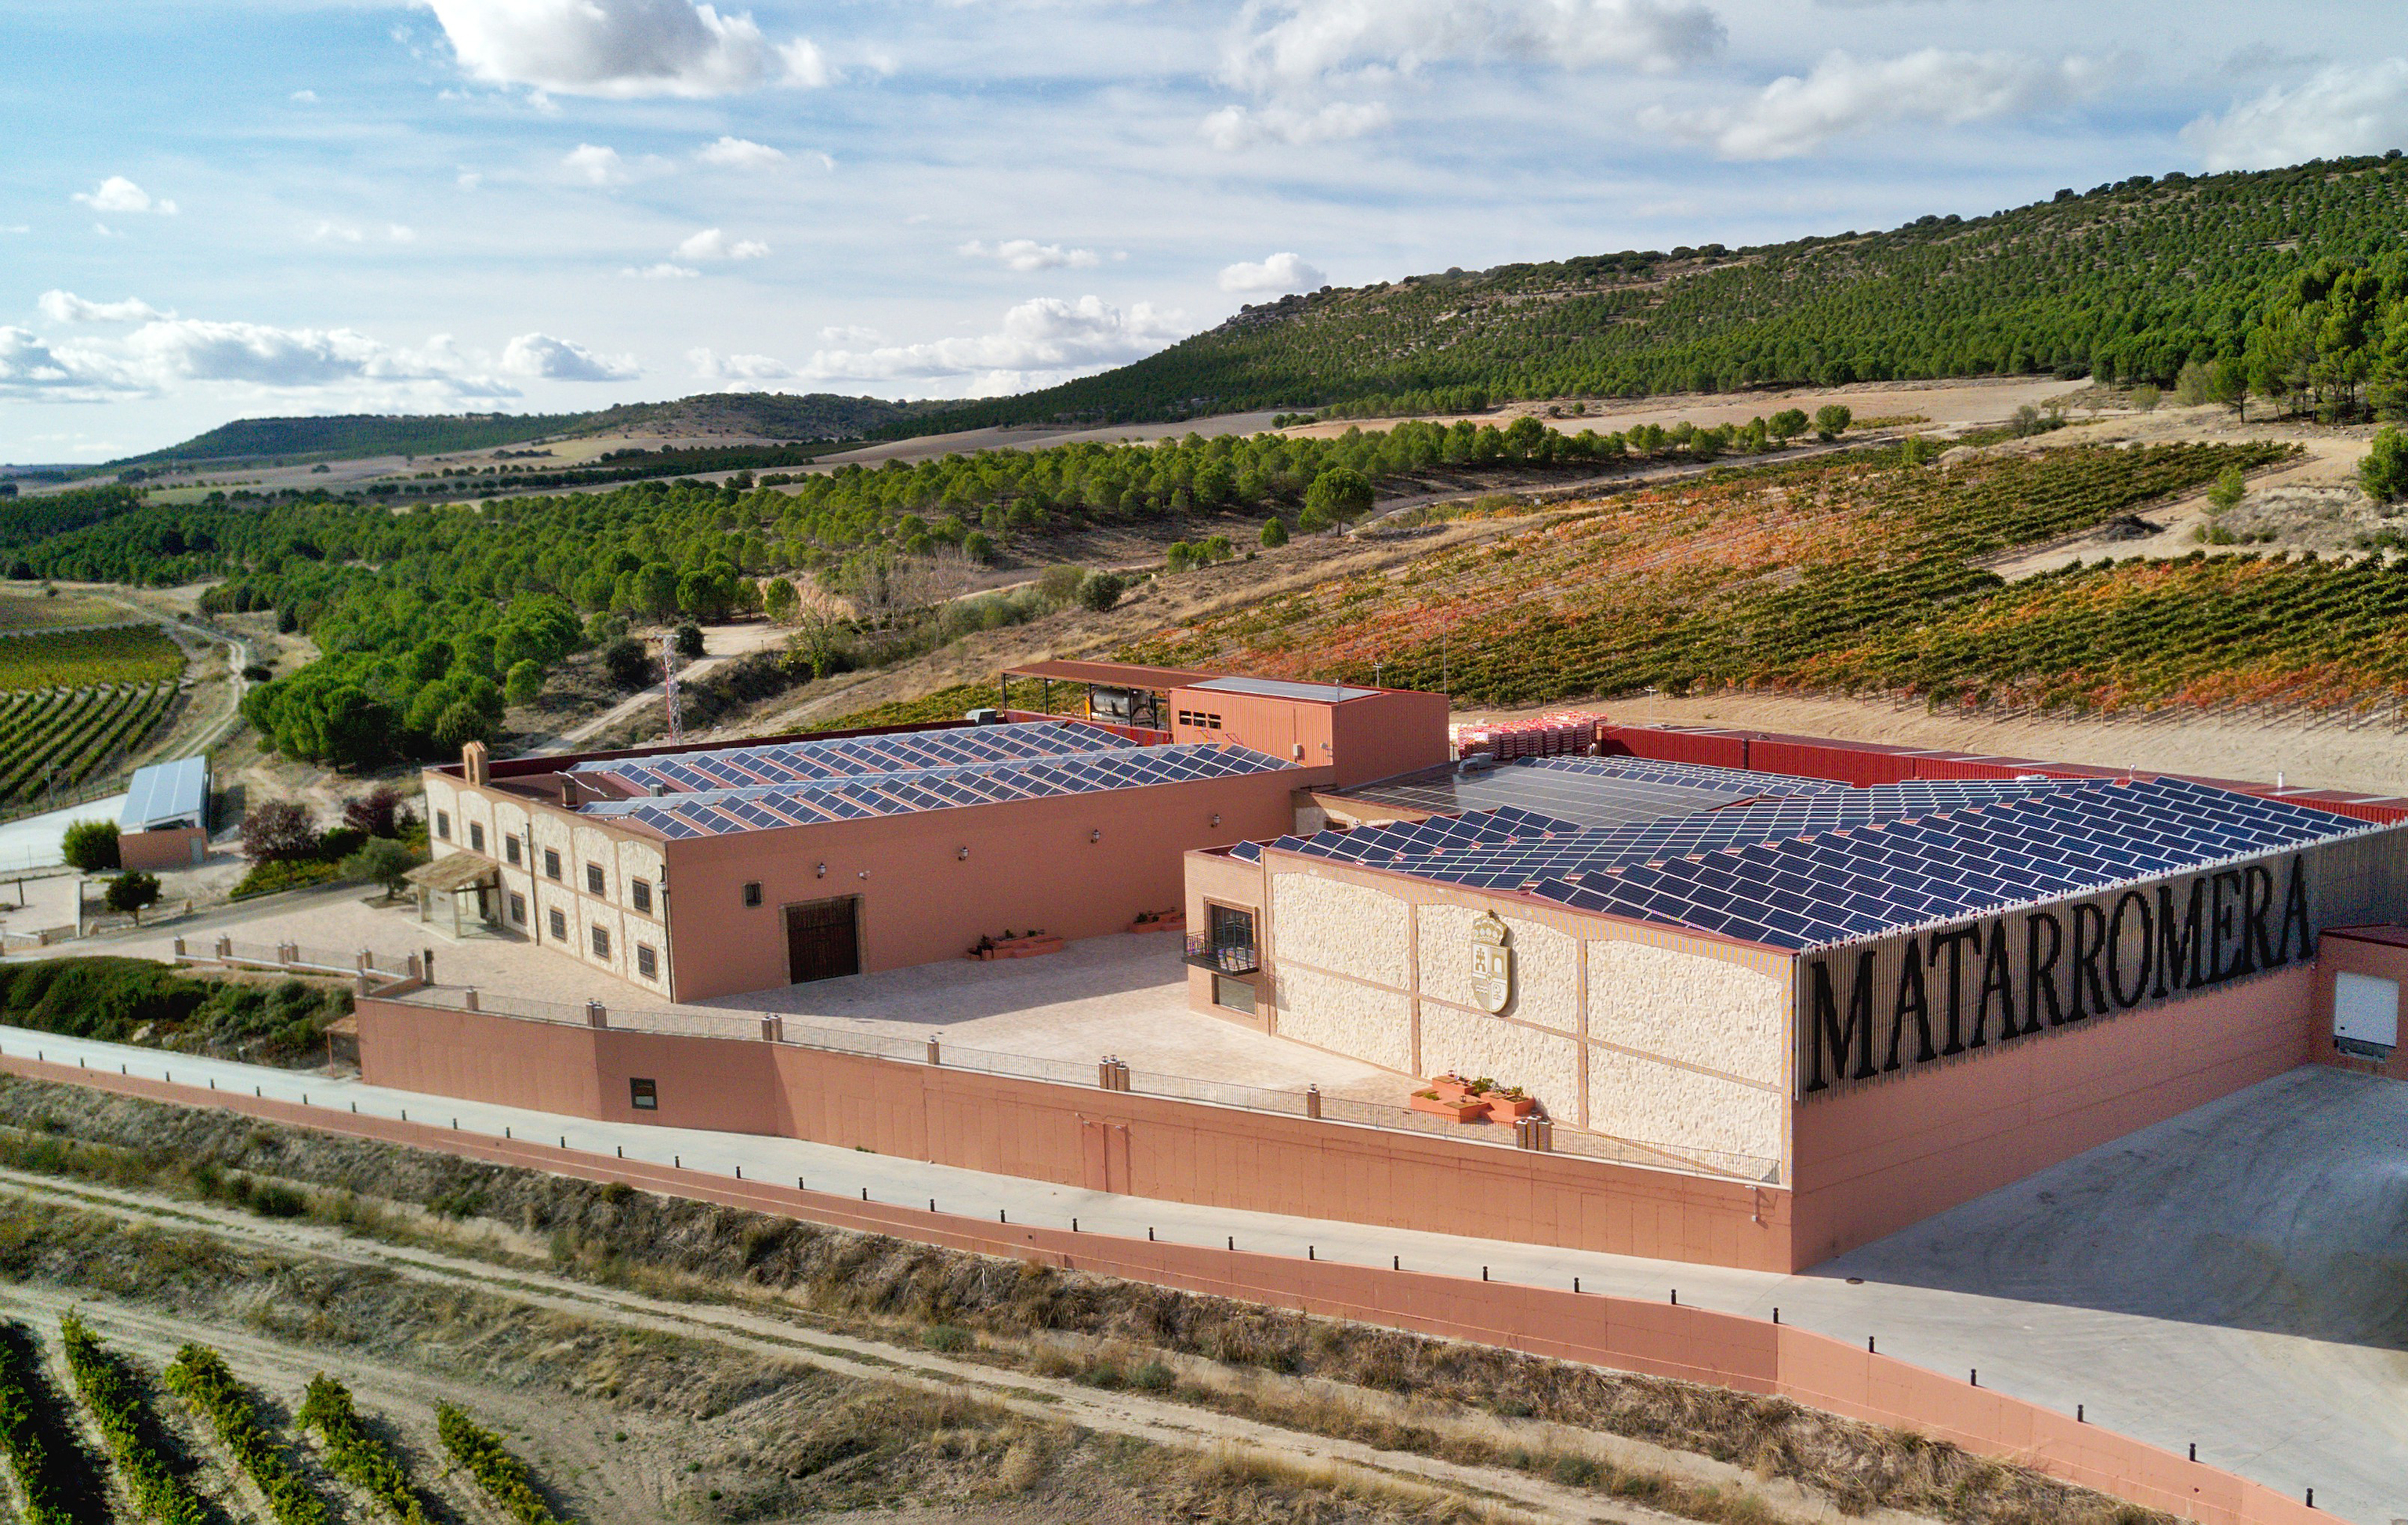 Desde las bodegas Matarromera afirman que tienen 20 instalaciones solares que suponen 9.500 paneles fotovoltaicos y que aportan el 50% del consumo que requieren.